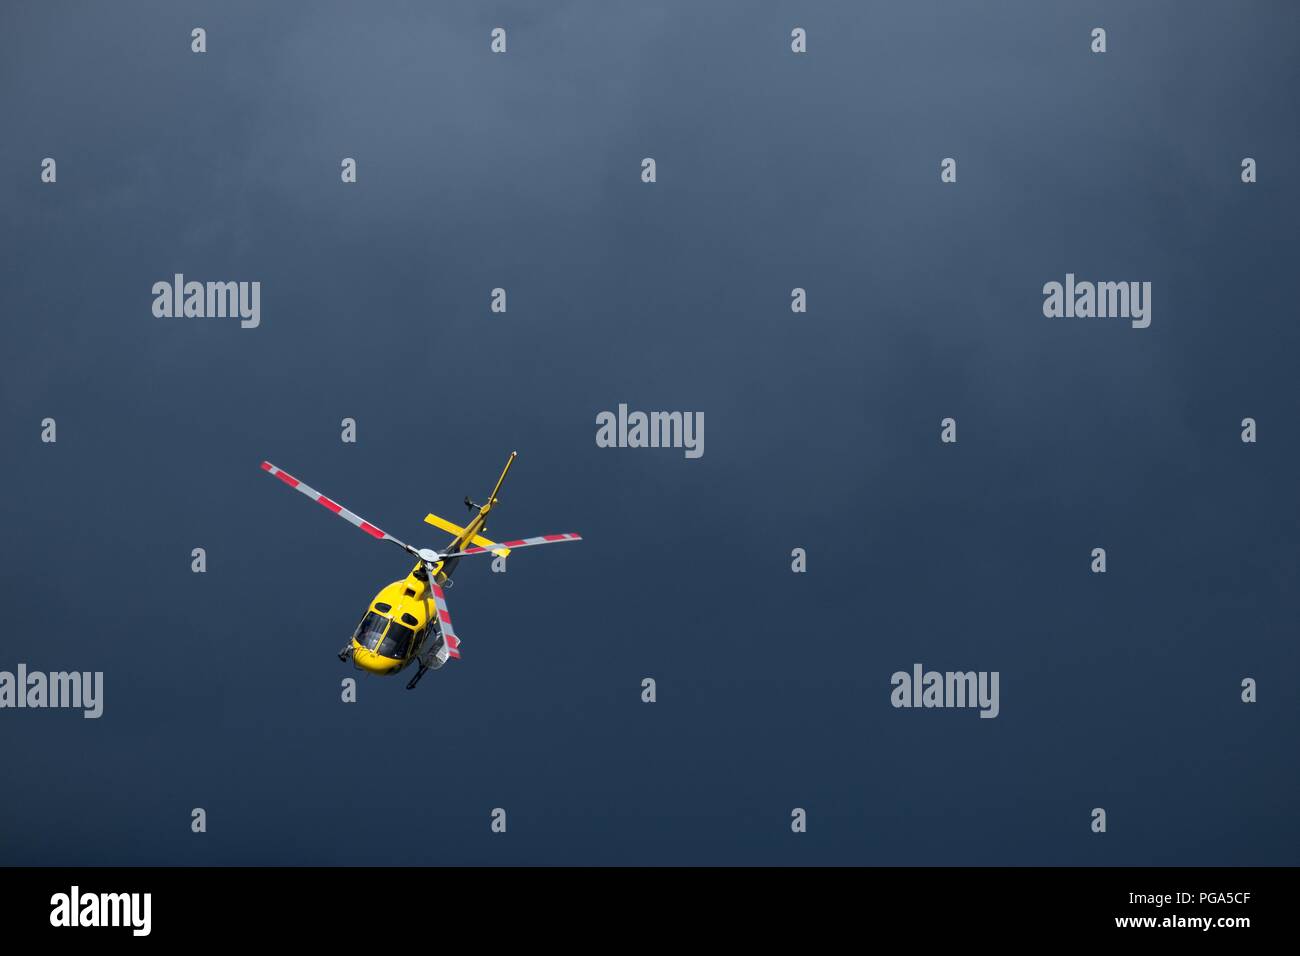 Gelbe Hubschrauber fliegen in den Himmel isoliert. Dramatischer Hintergrund mit Kopie Raum Stockfoto